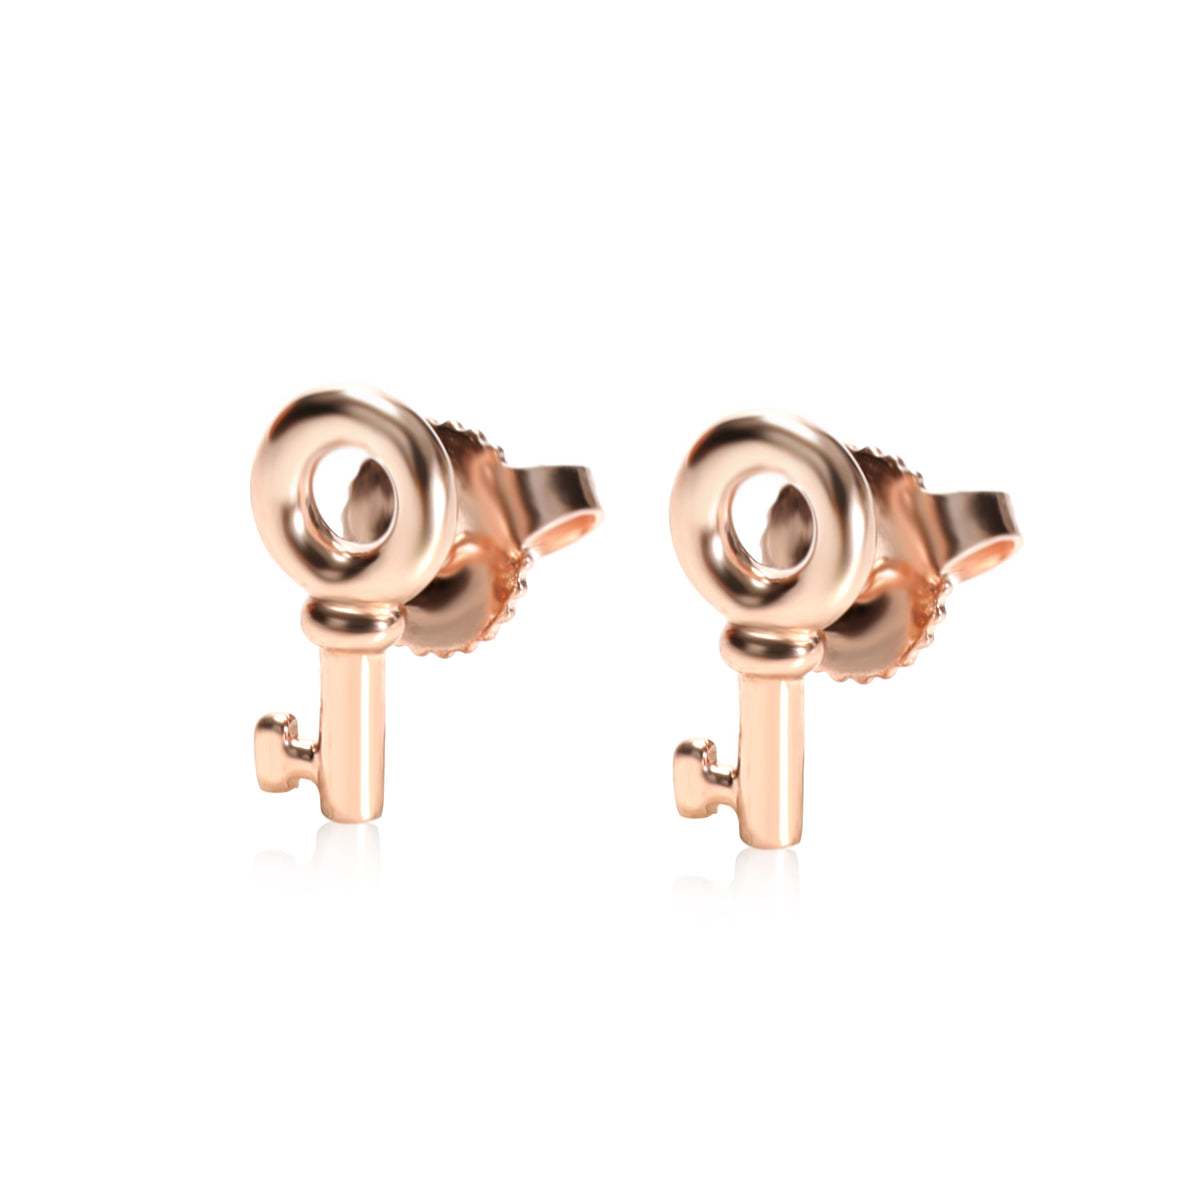 Tiffany & Co. Keys Stud Earring in 18K Rose Gold